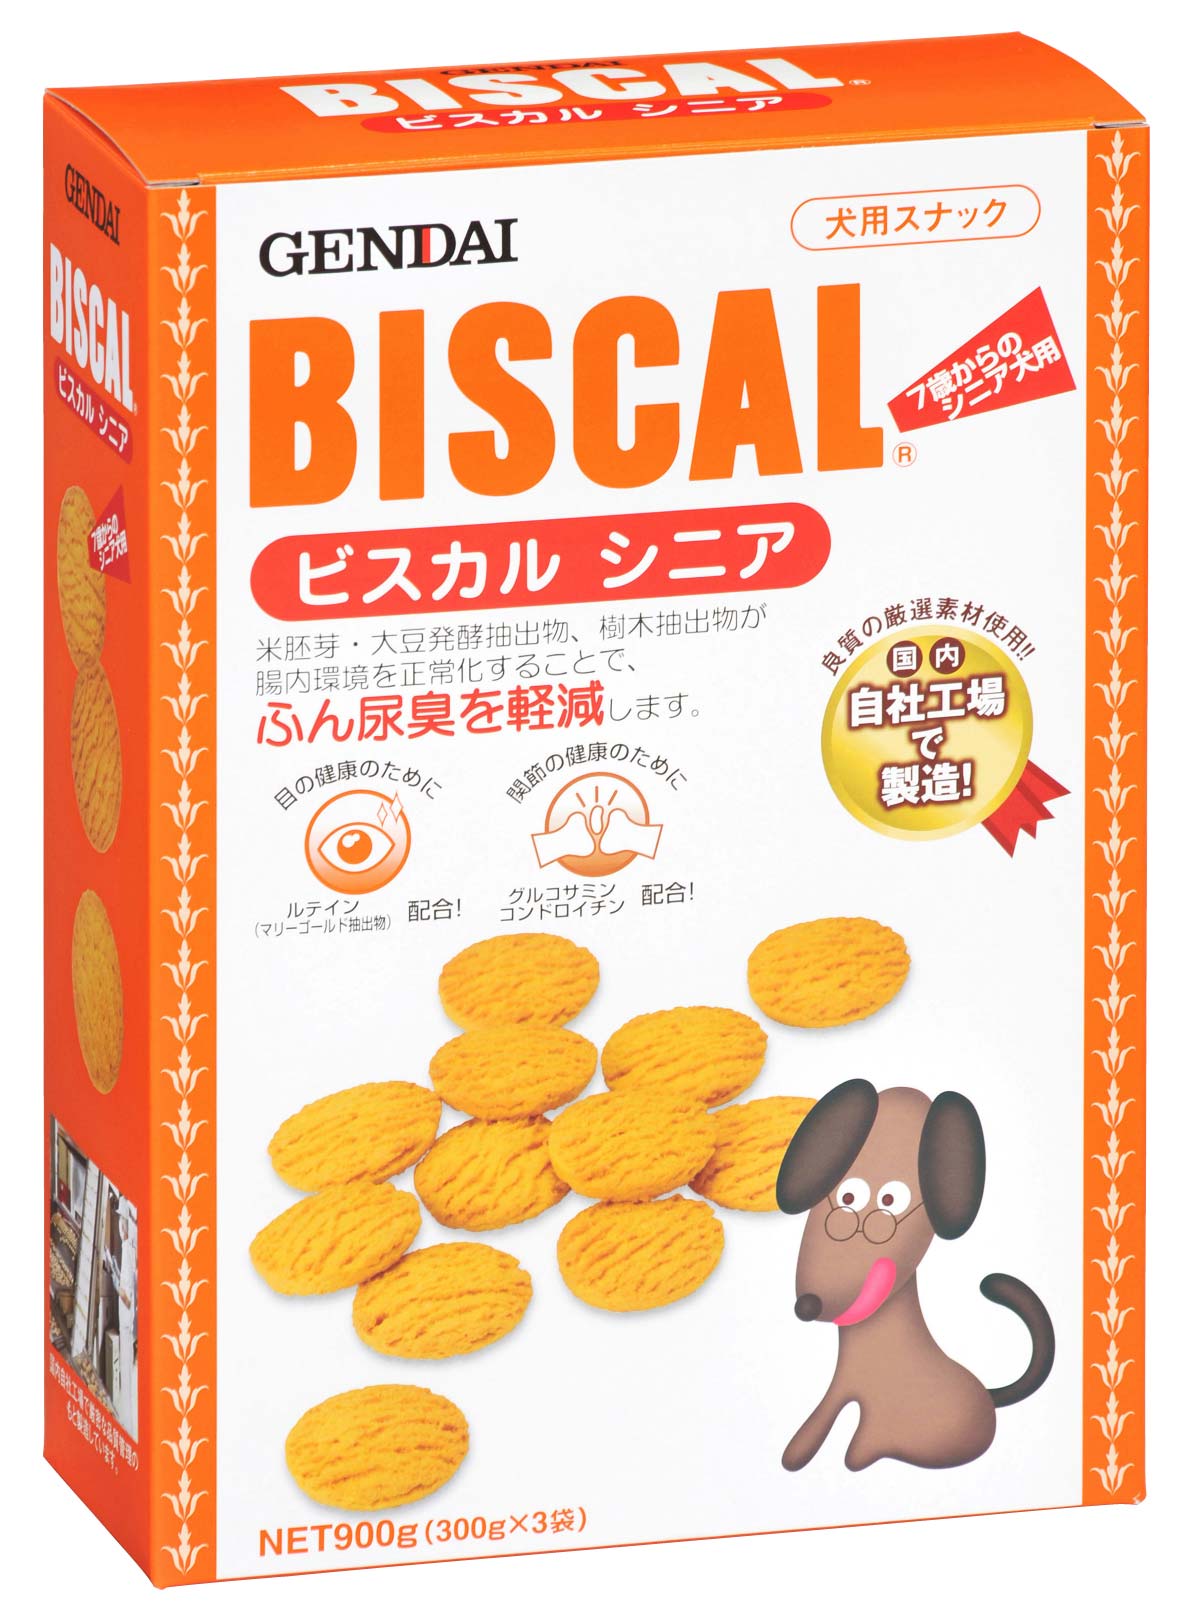 消臭餅乾300g(老犬用)02117
BISCAL Mature adult dog cookie-300g